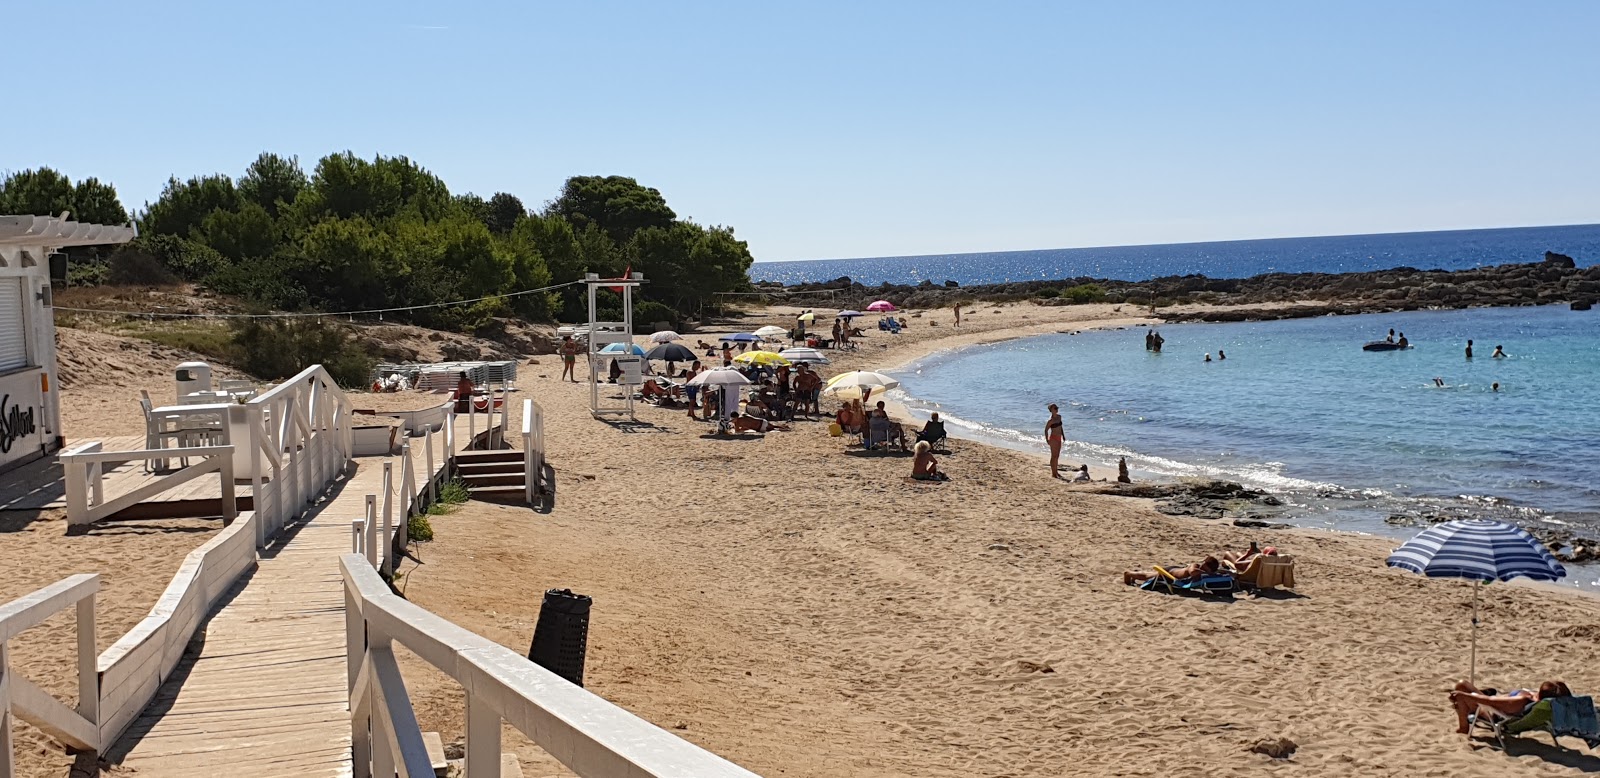 Photo of Spiaggia di Serrone located in natural area